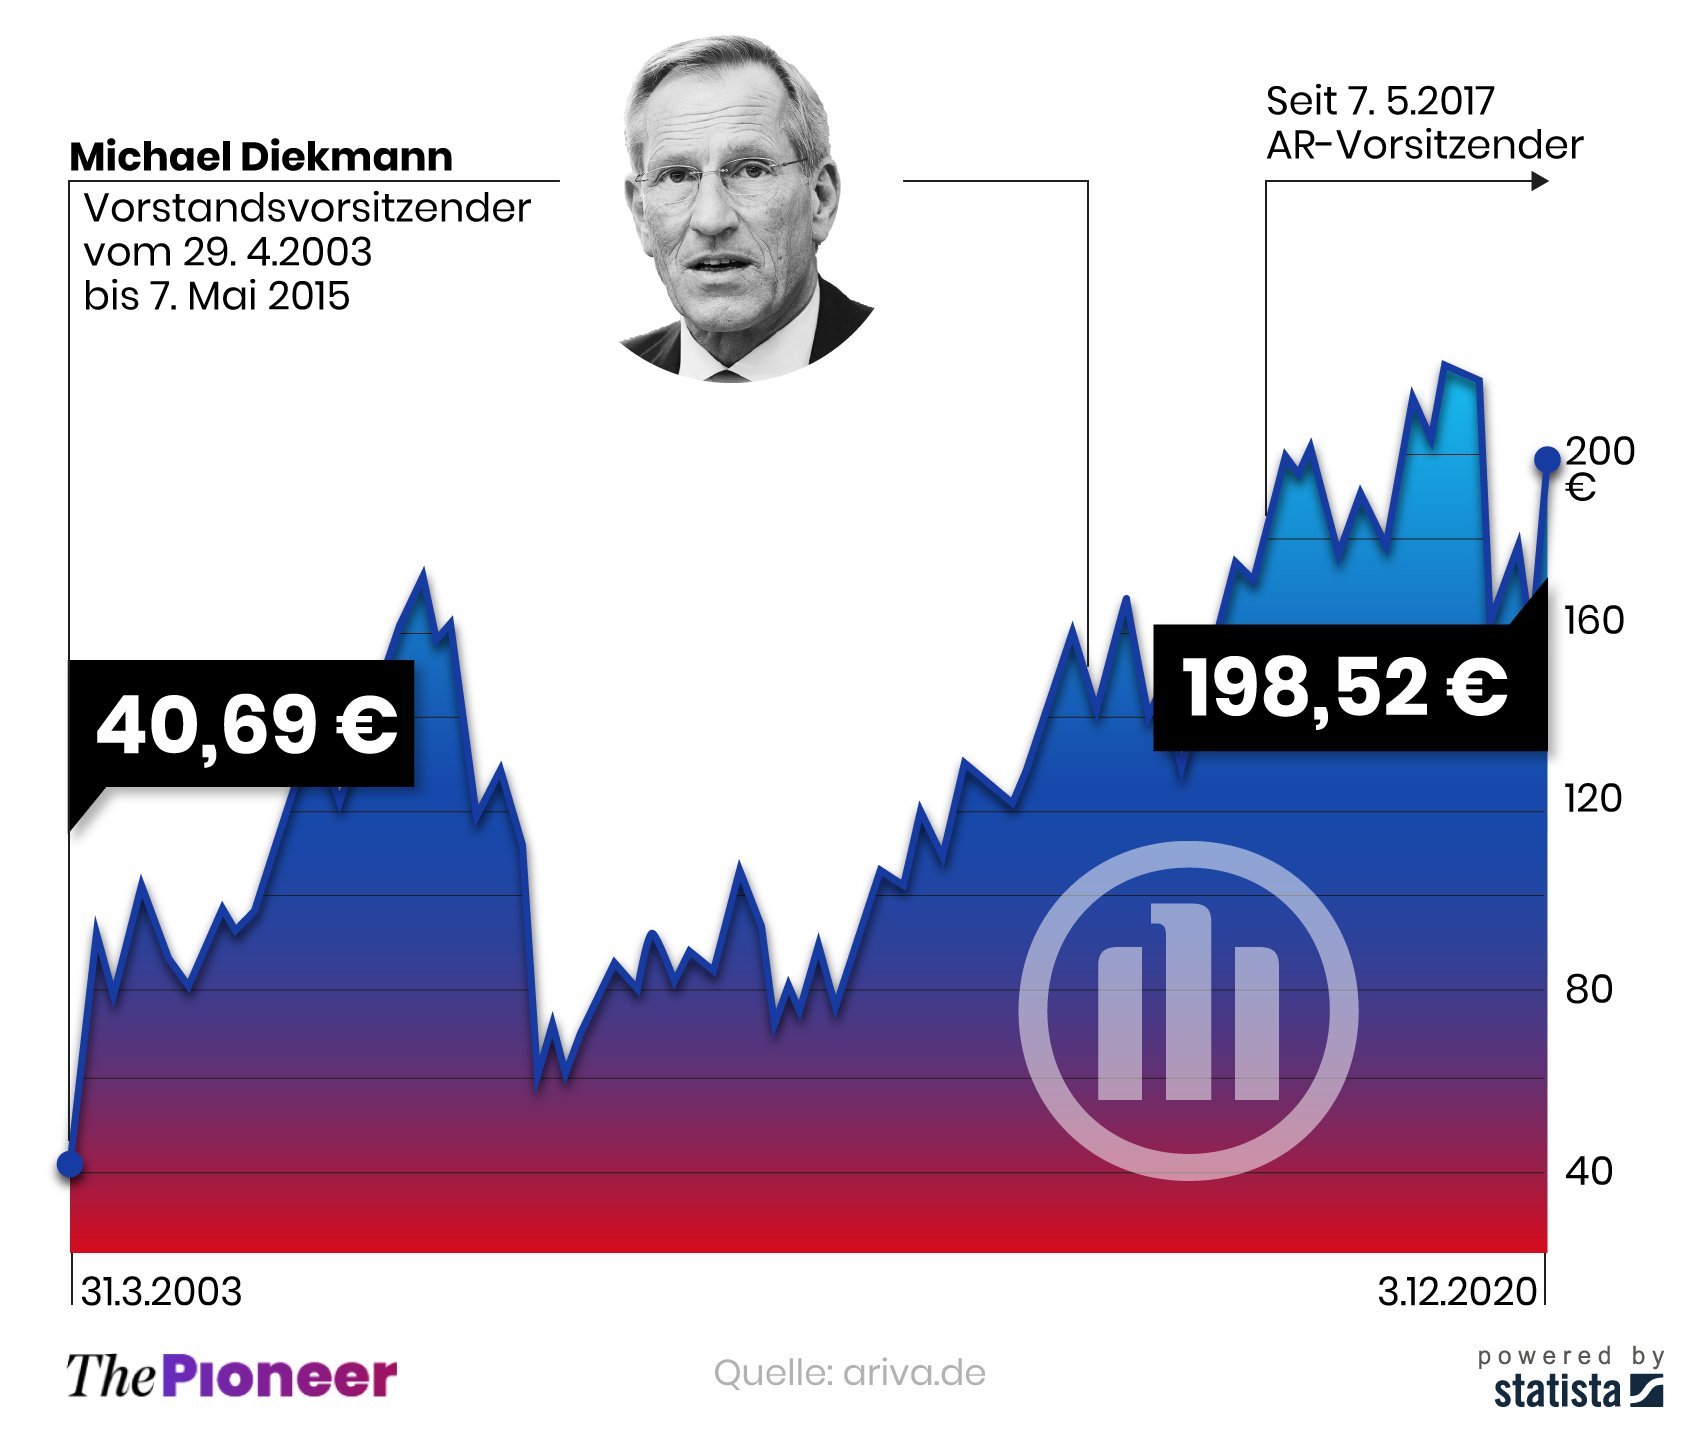 Aktienverlauf seit Amtsantritt von Diekmann, in Euro